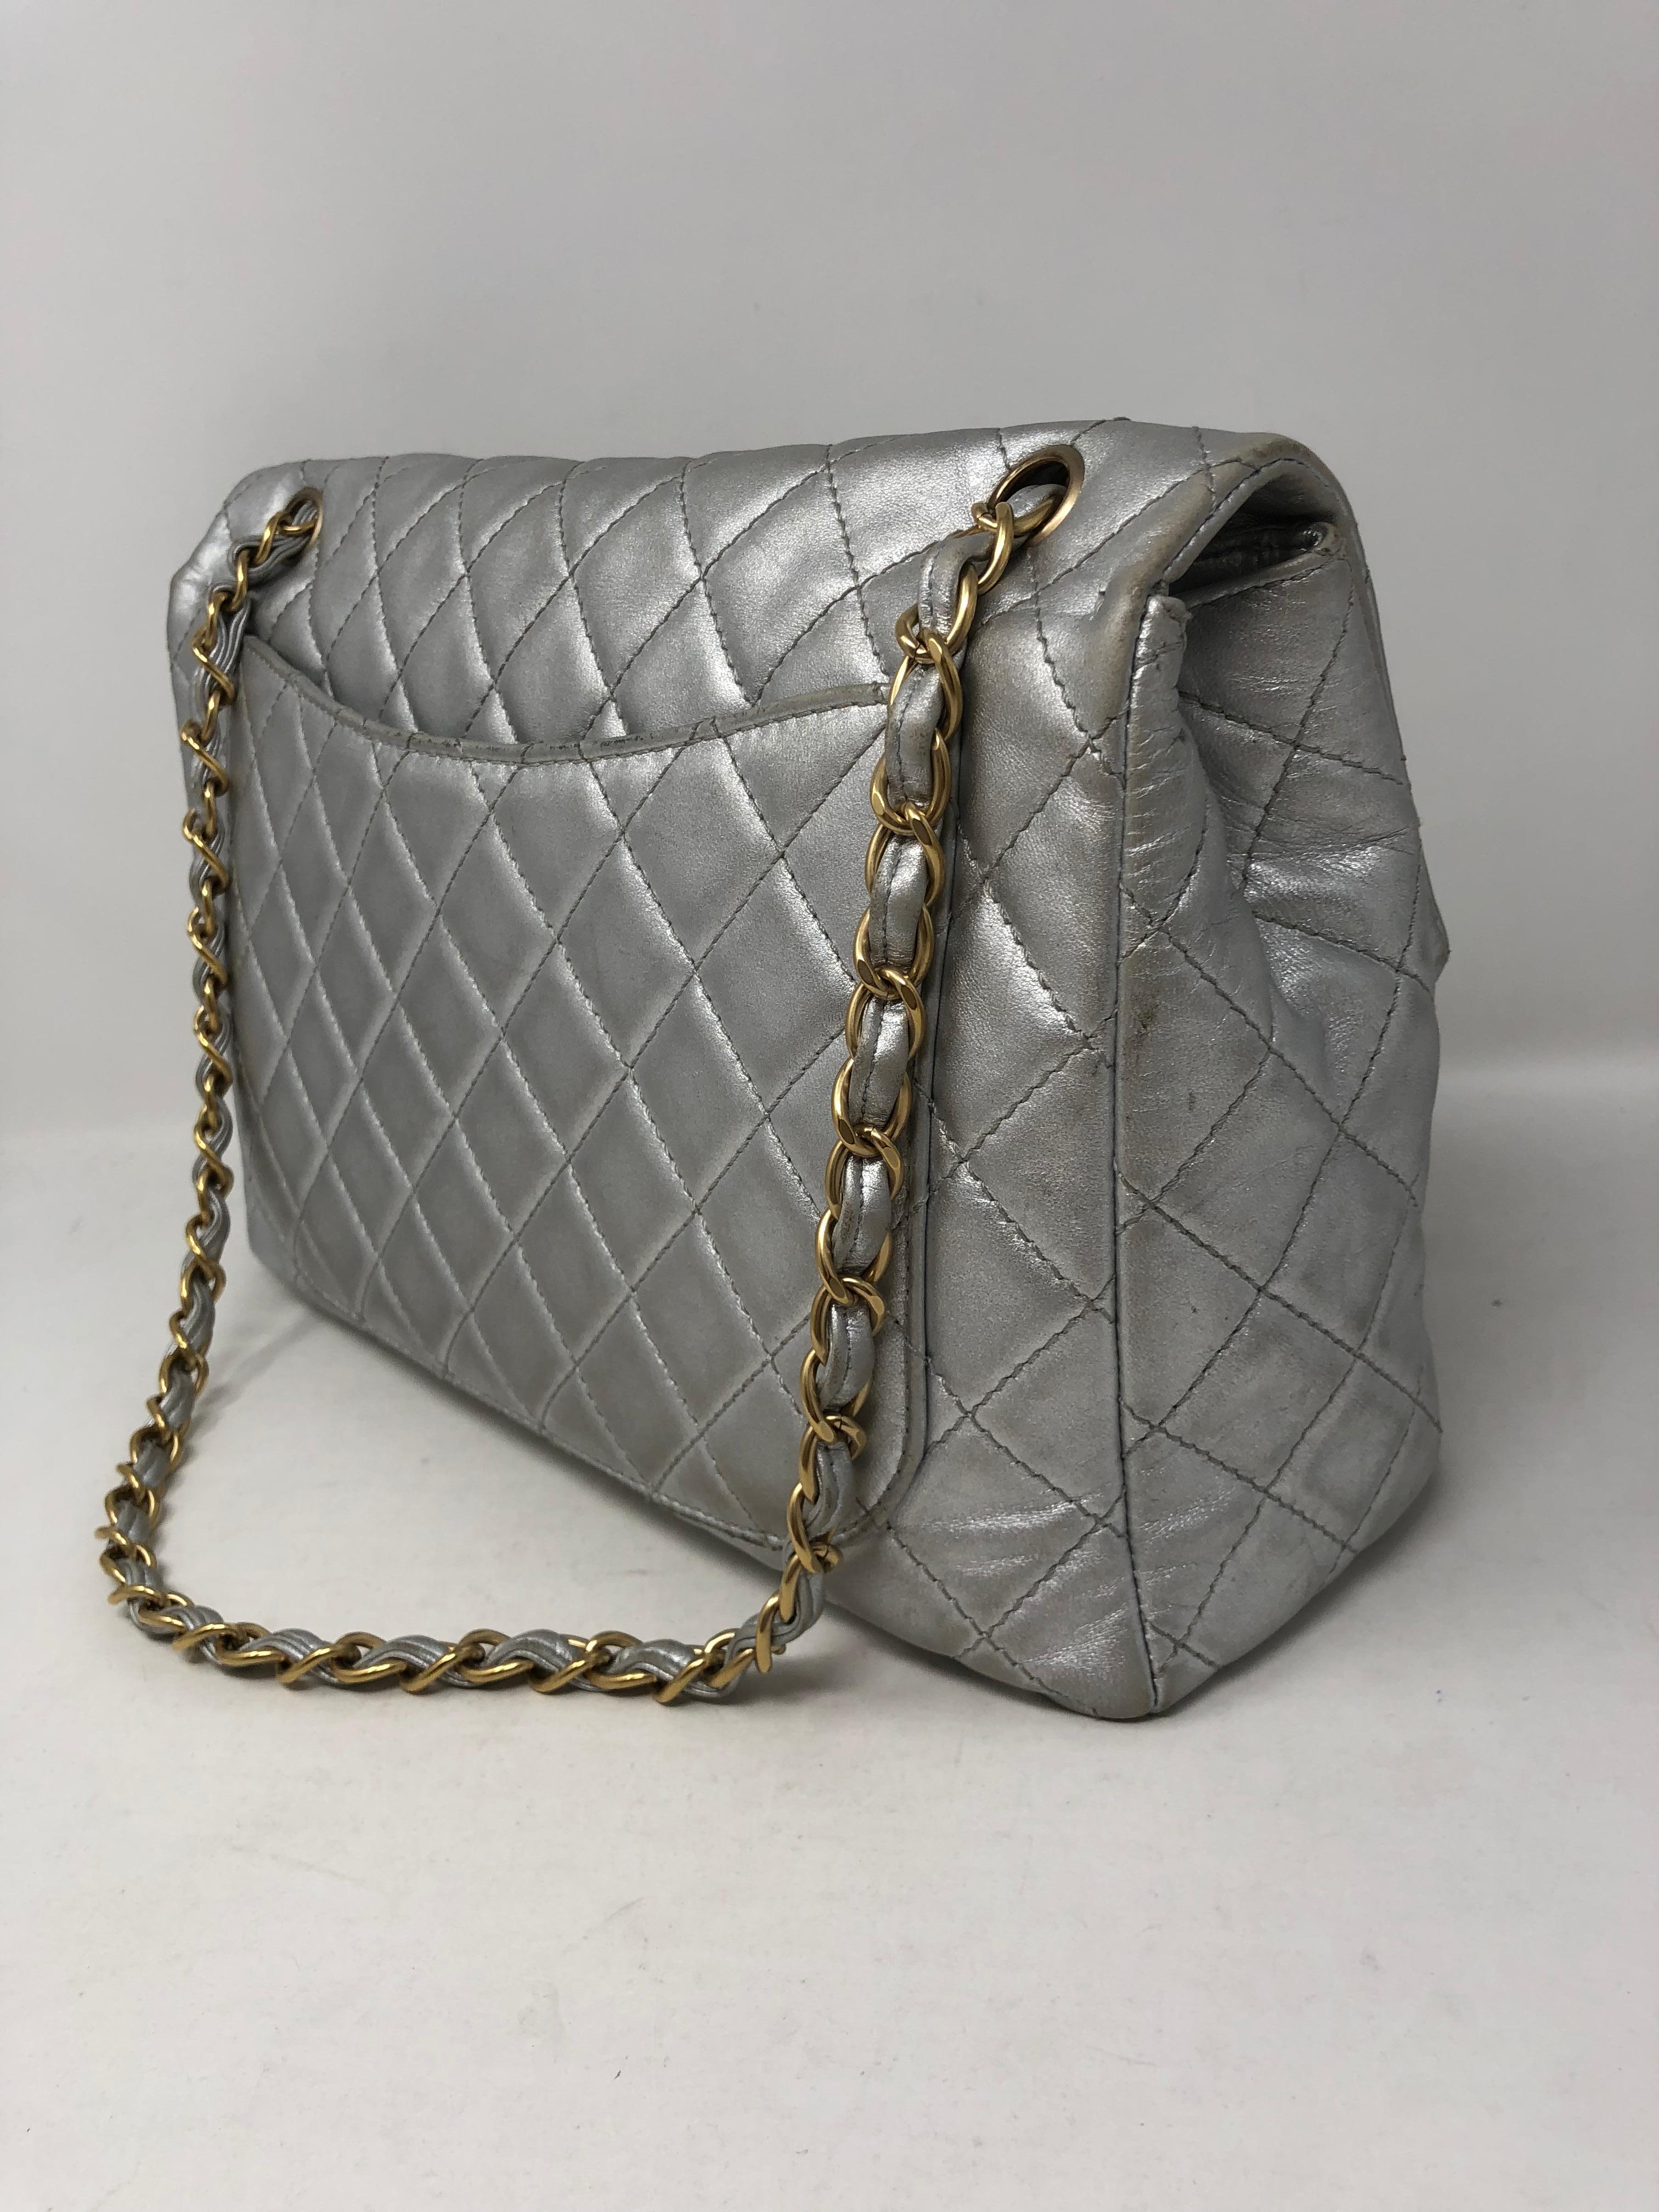 Chanel Silver Metallic Jumbo Bag 6